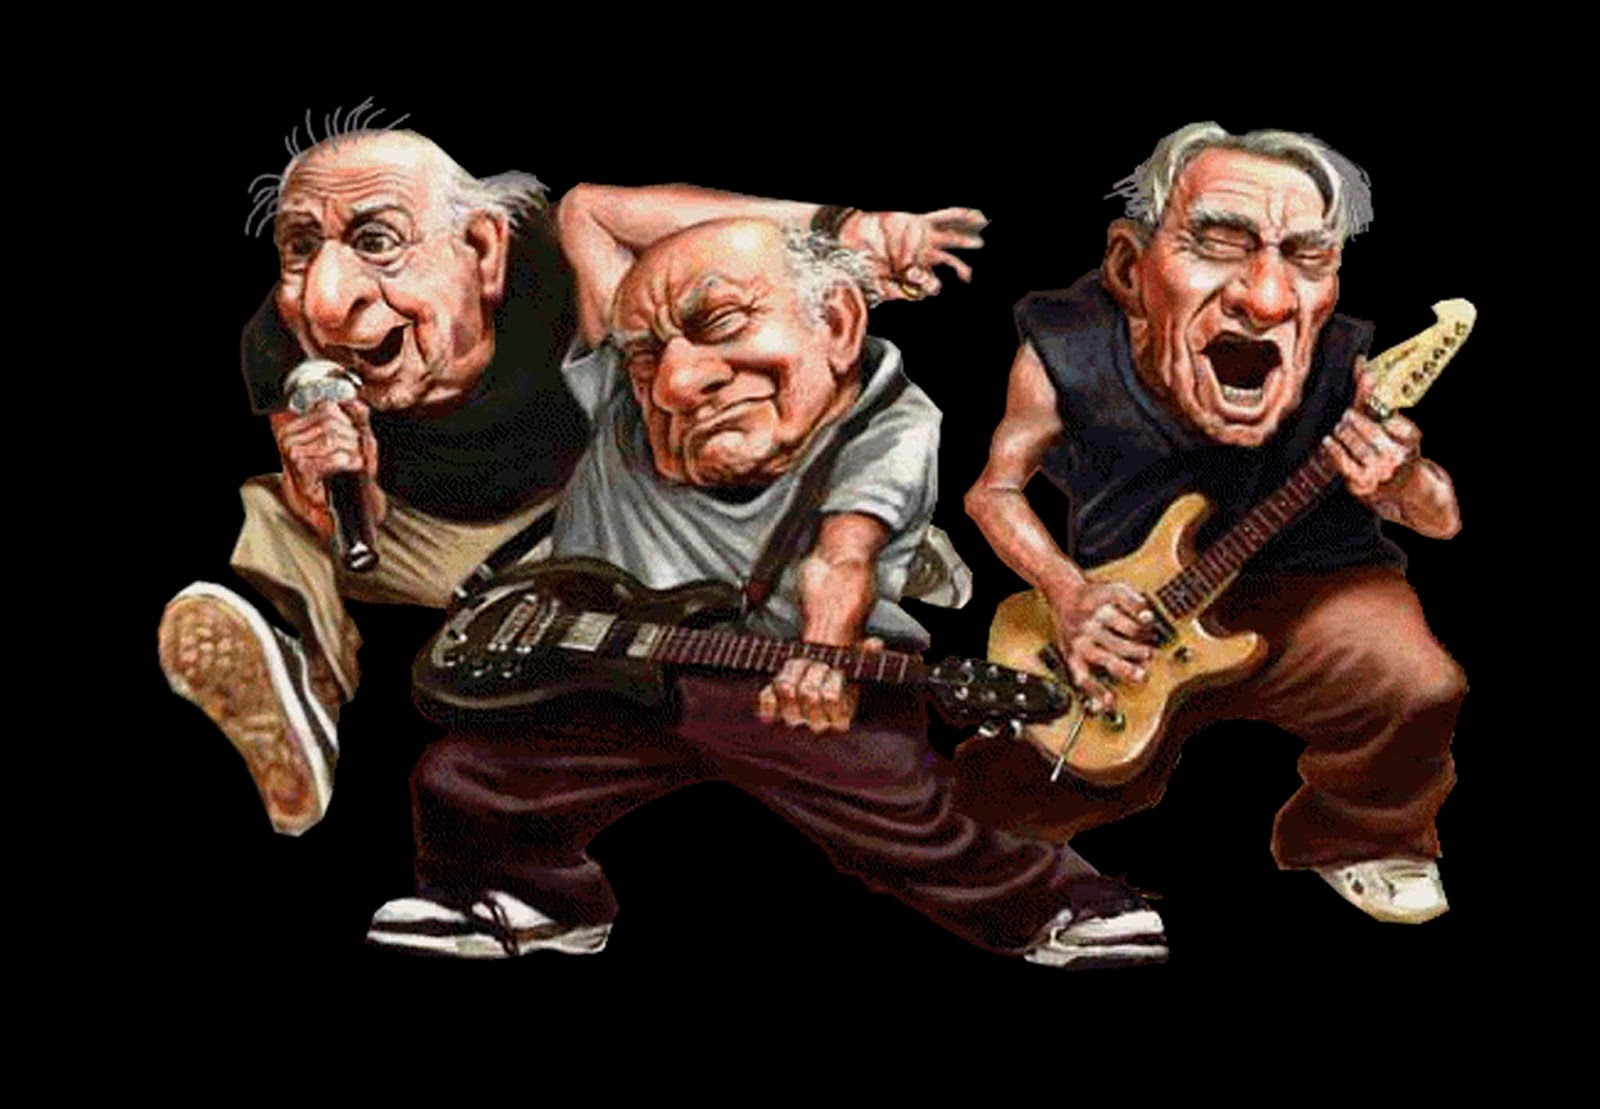 Есть три деда. Старый рокер. Старик рокер. Пожилой рокер. Пожилые рок музыканты.